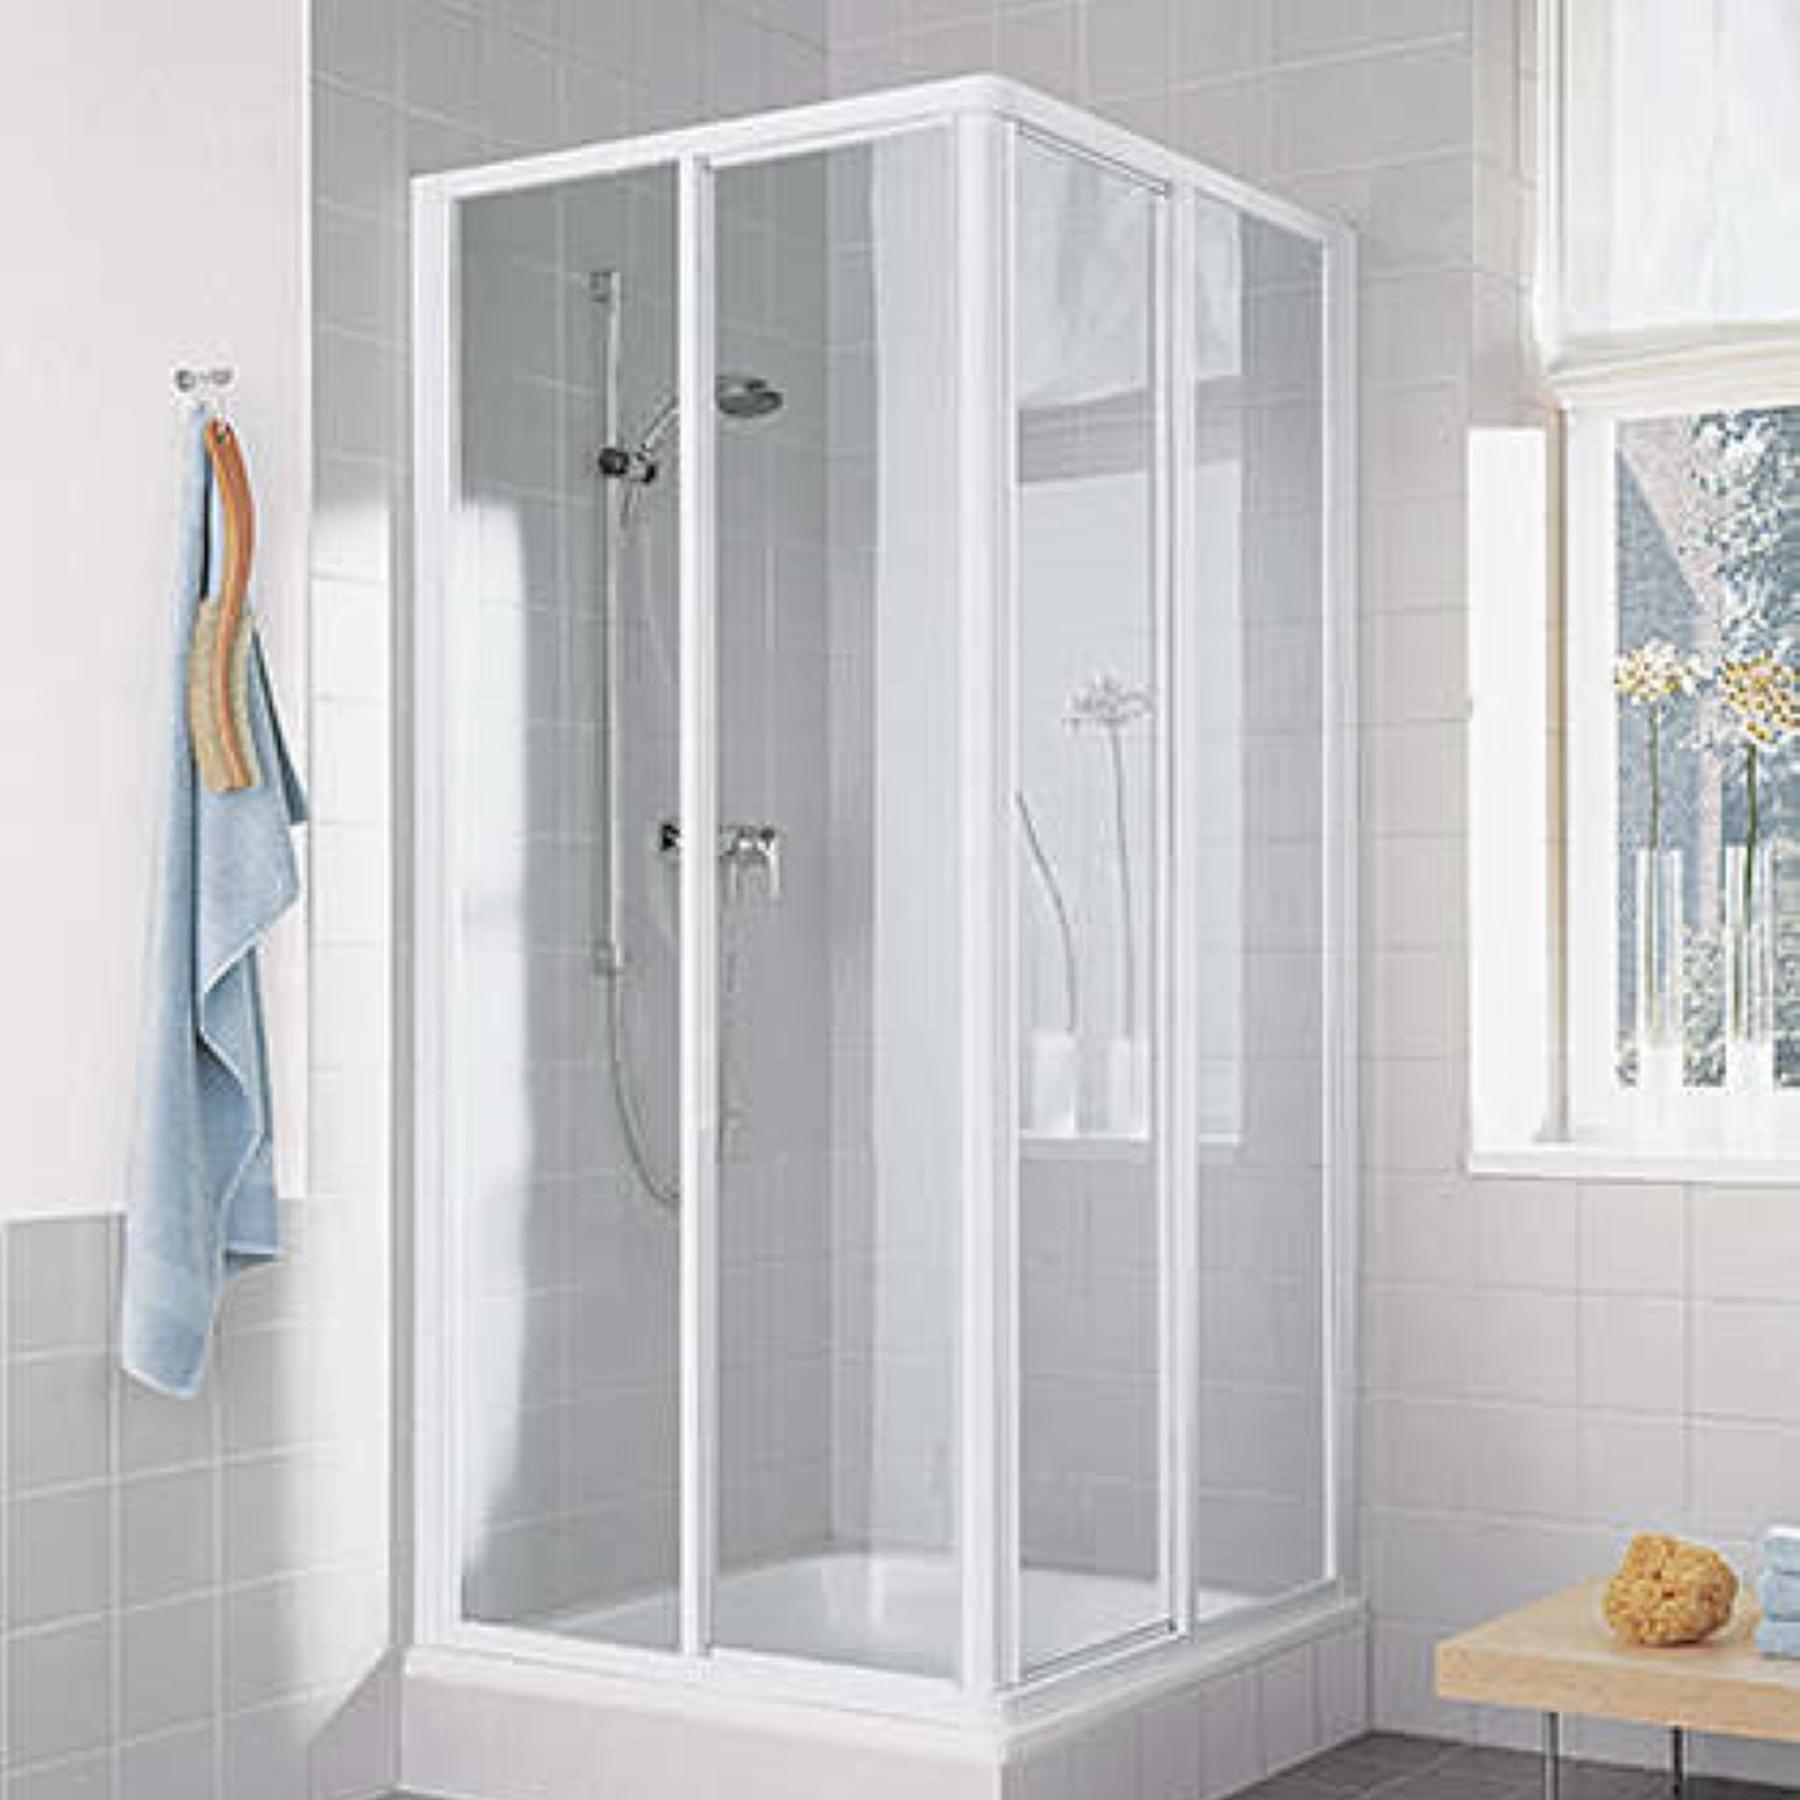 Demi paroi de douche angle coulissante ROTH CADA CAED2 largeur 100 cm hauteur 190 cm blanc verre clair